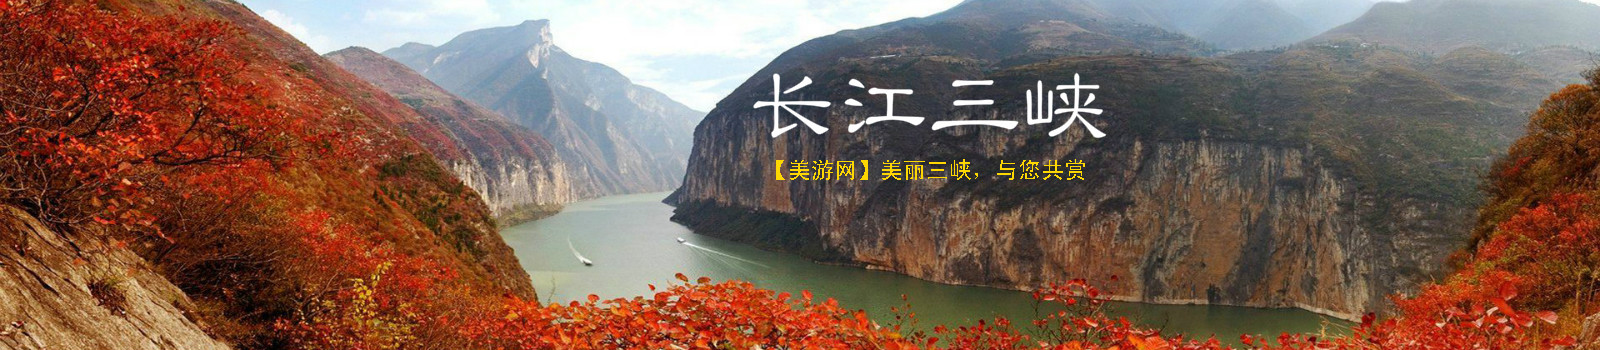 瞿塘峡长江三峡旅游